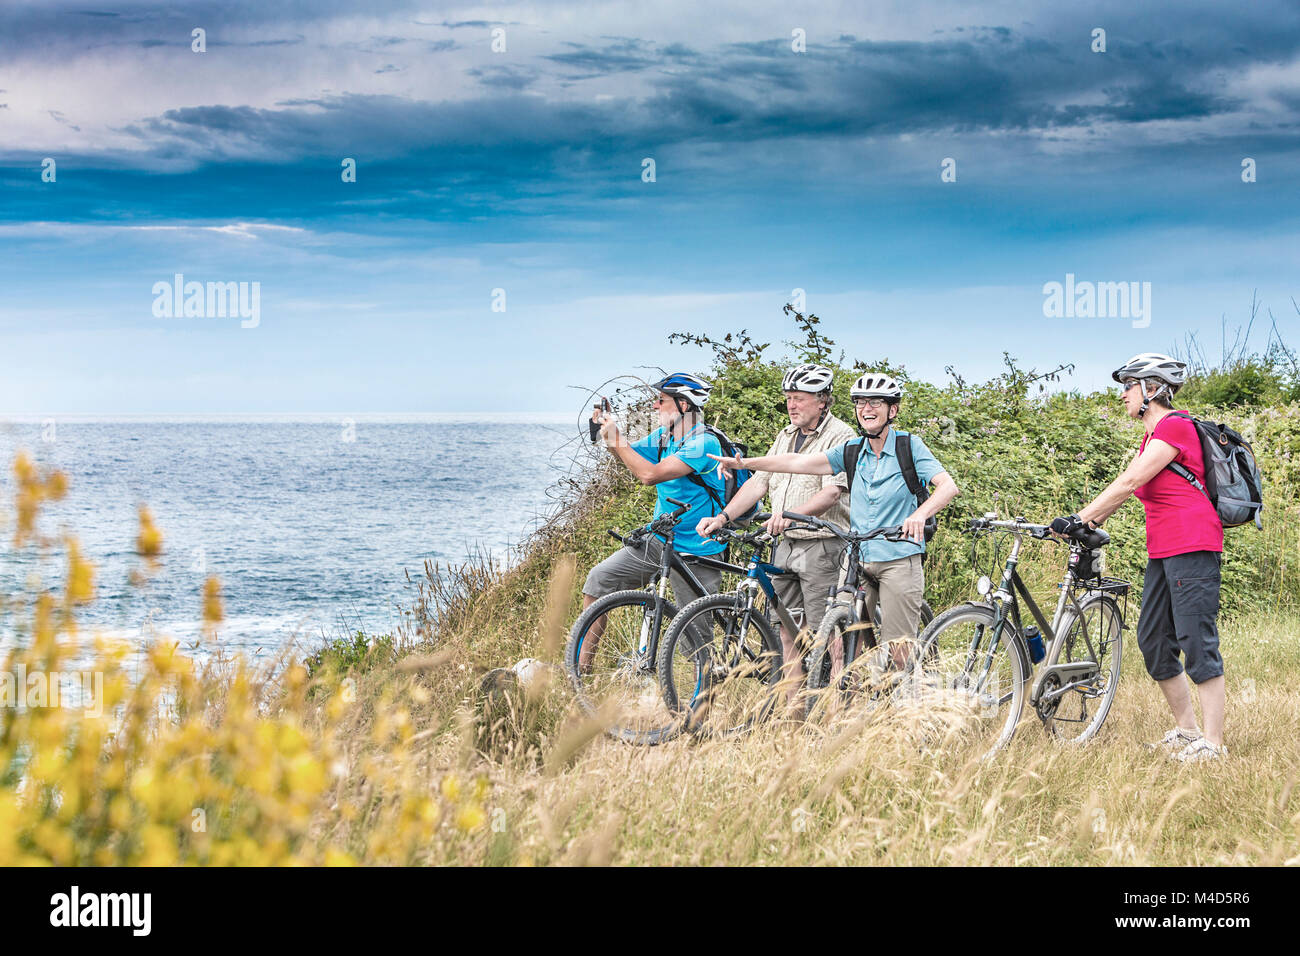 Urlauber auf einer Biketour am Meer Stock Photo